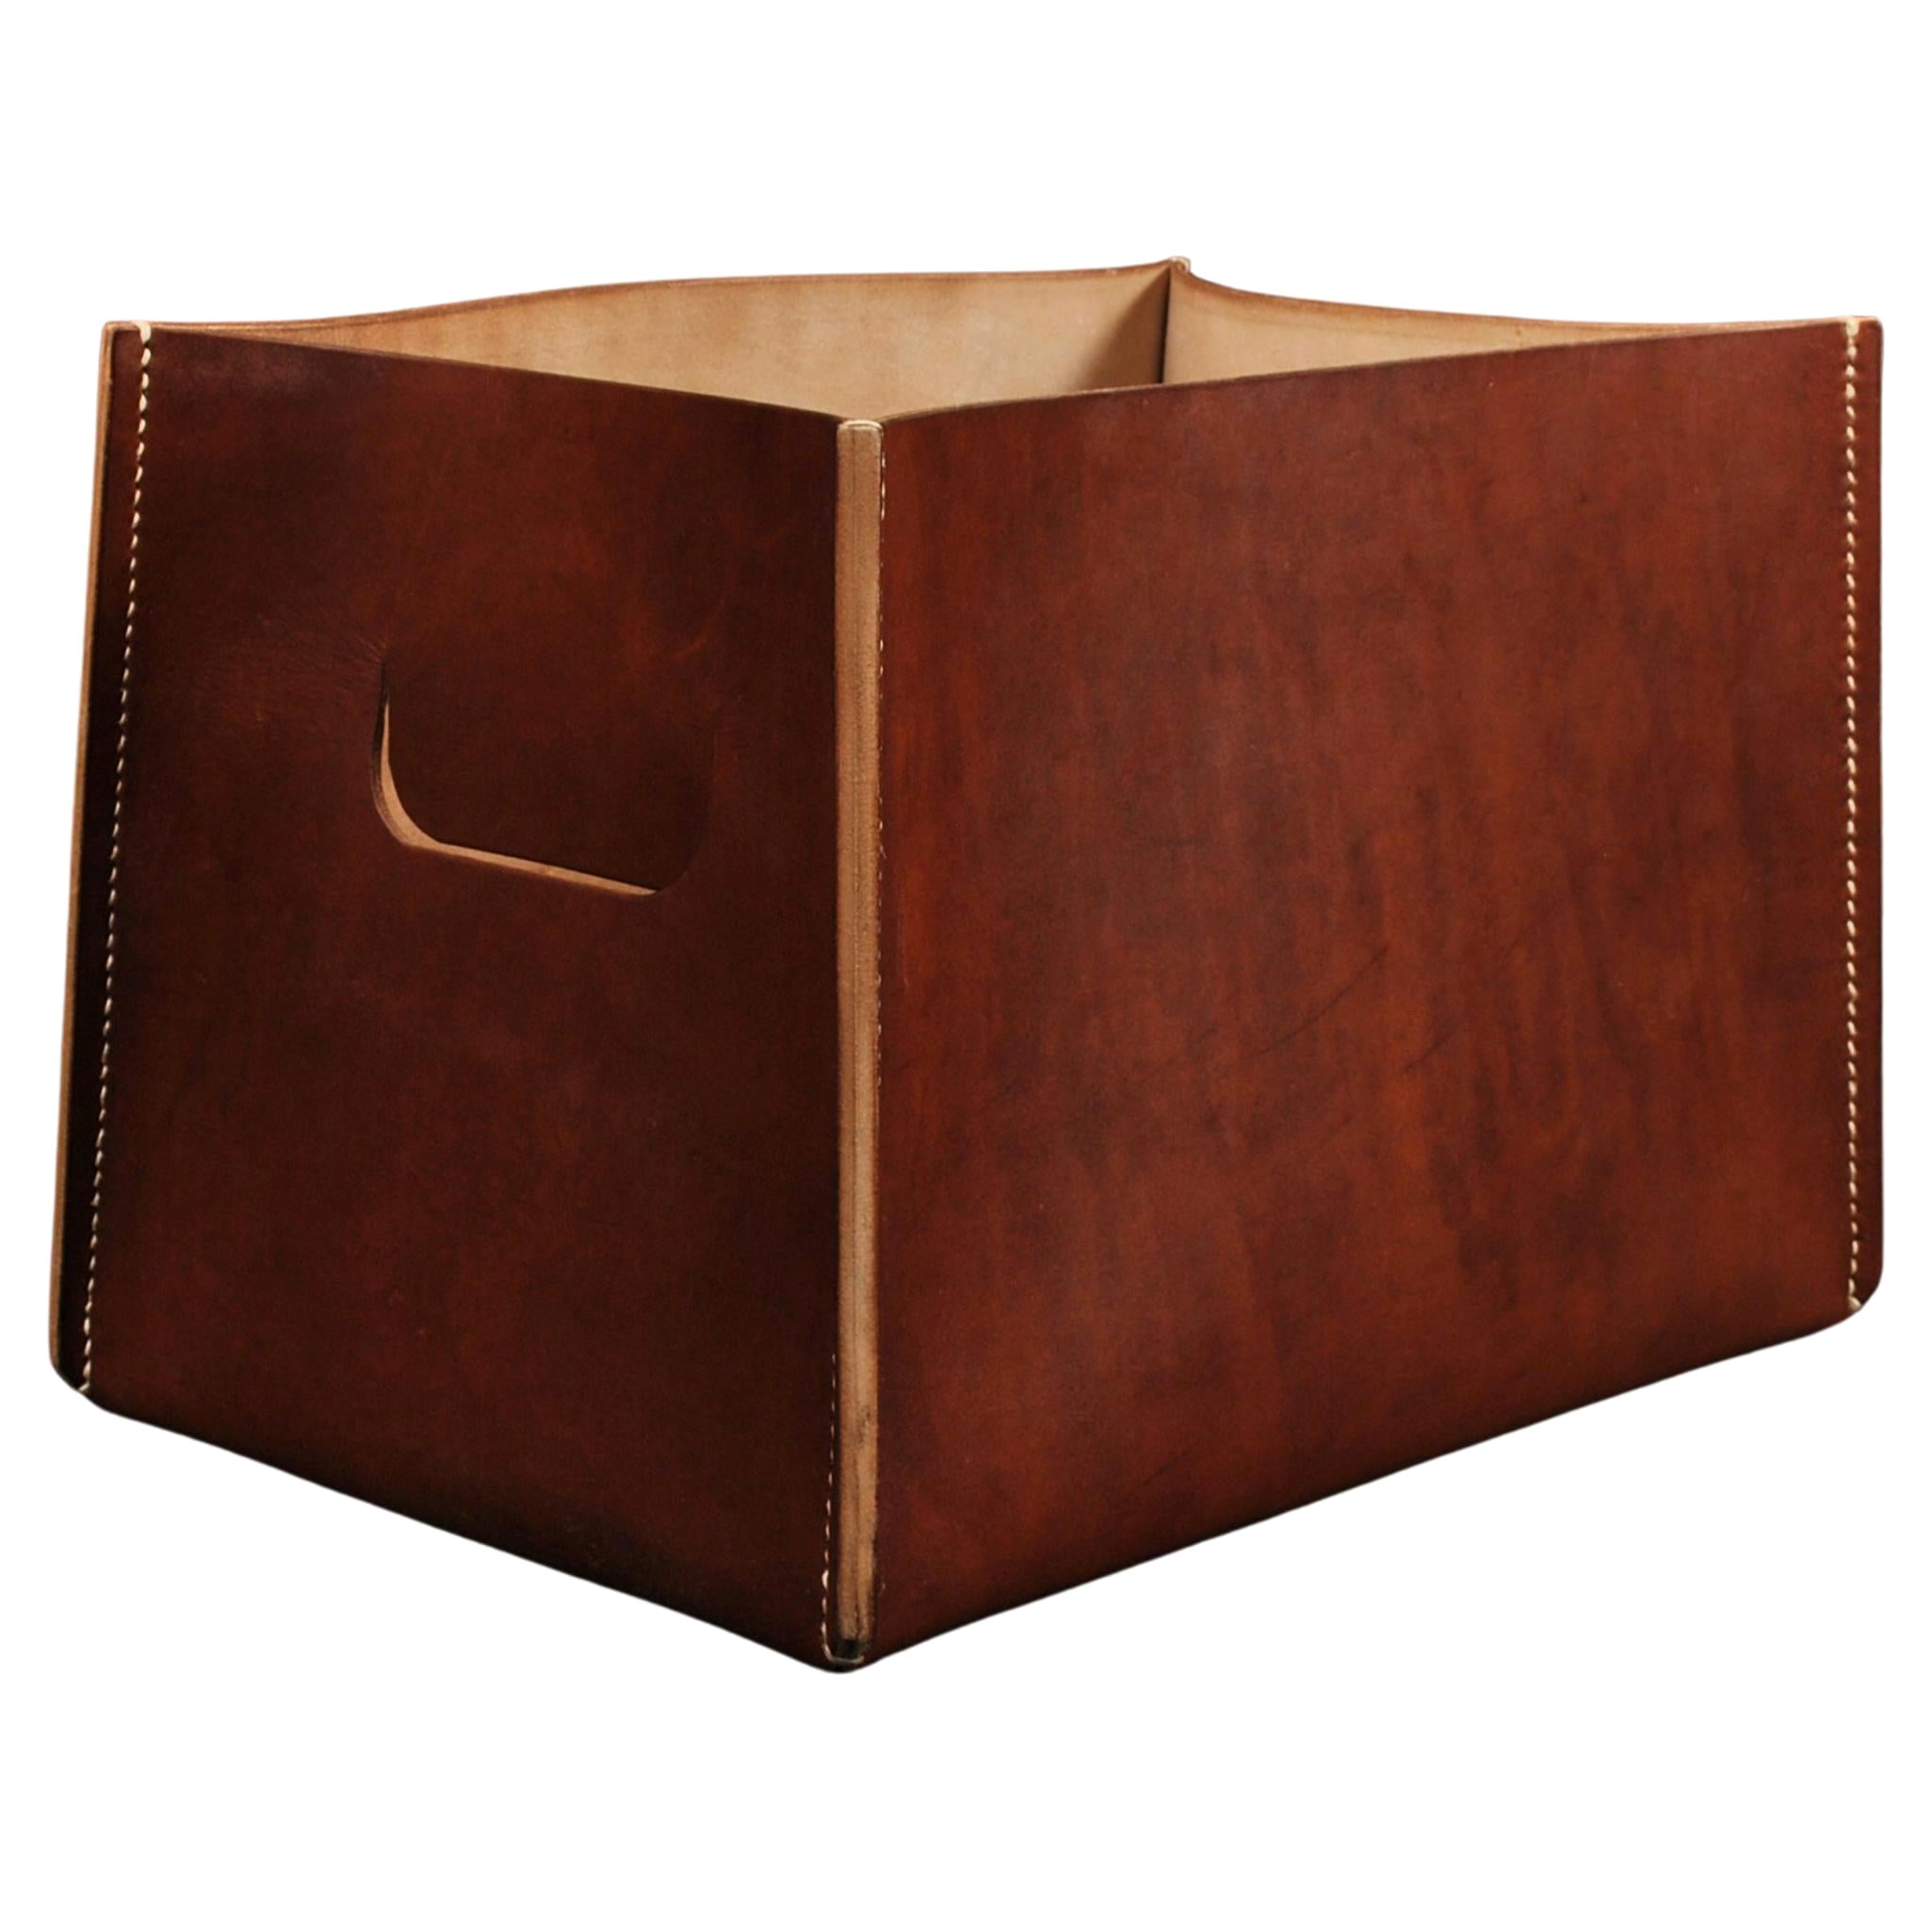 Handgefertigte Schachtel aus braunem Leder und Eiche